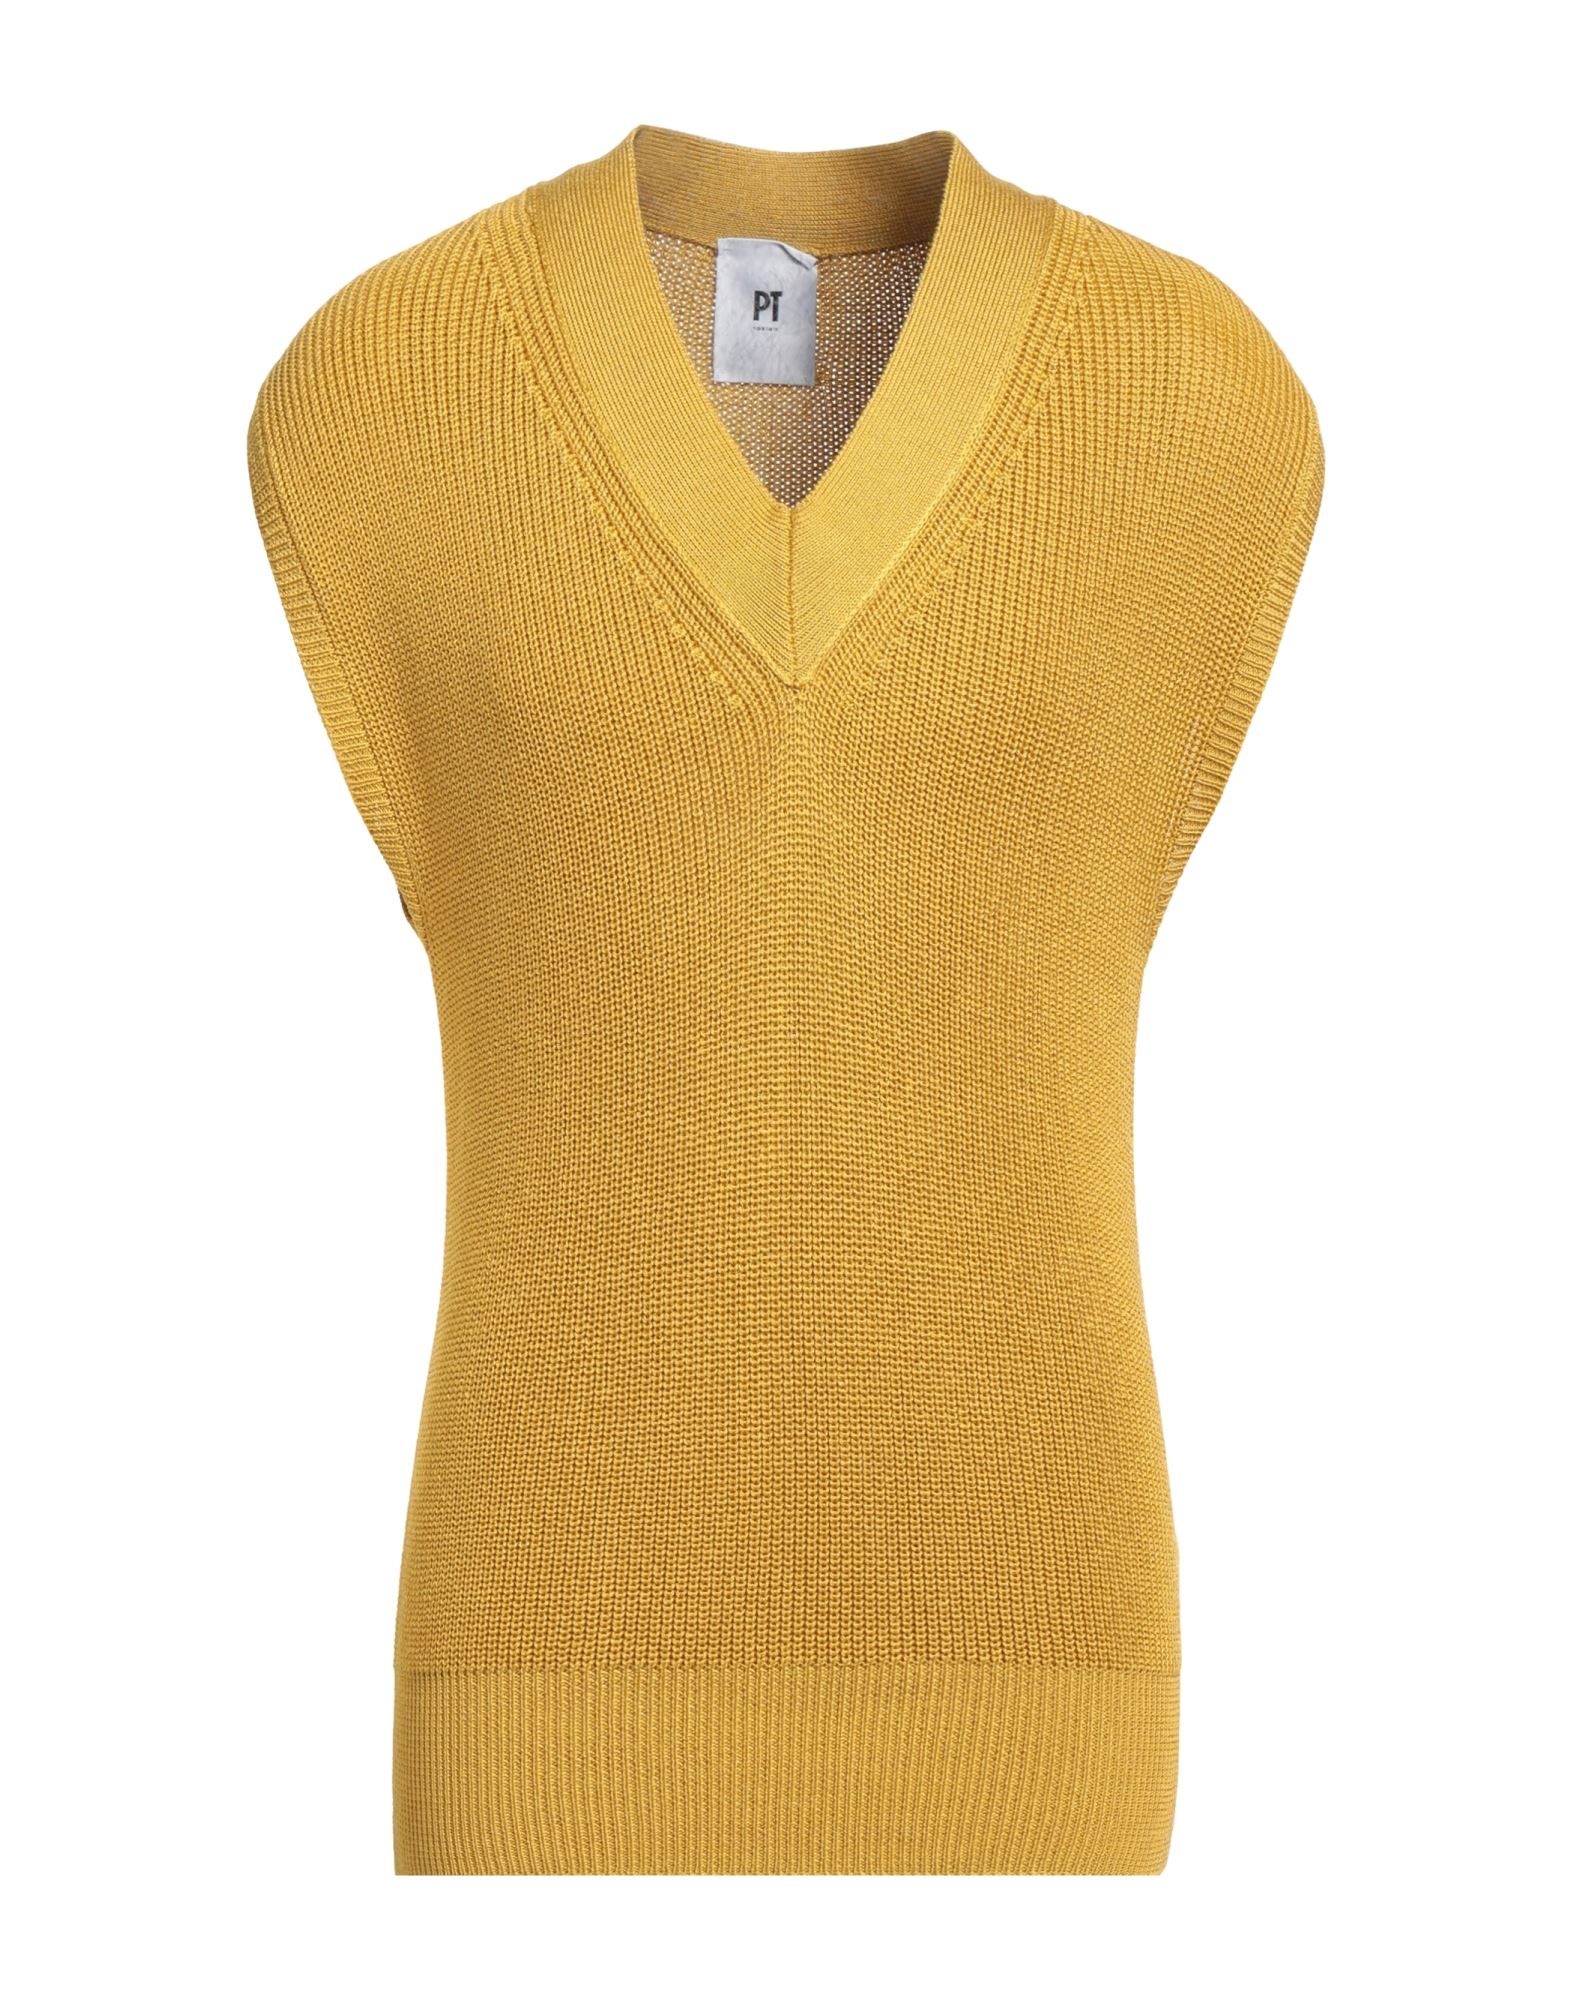 Pt Torino Sweaters In Yellow